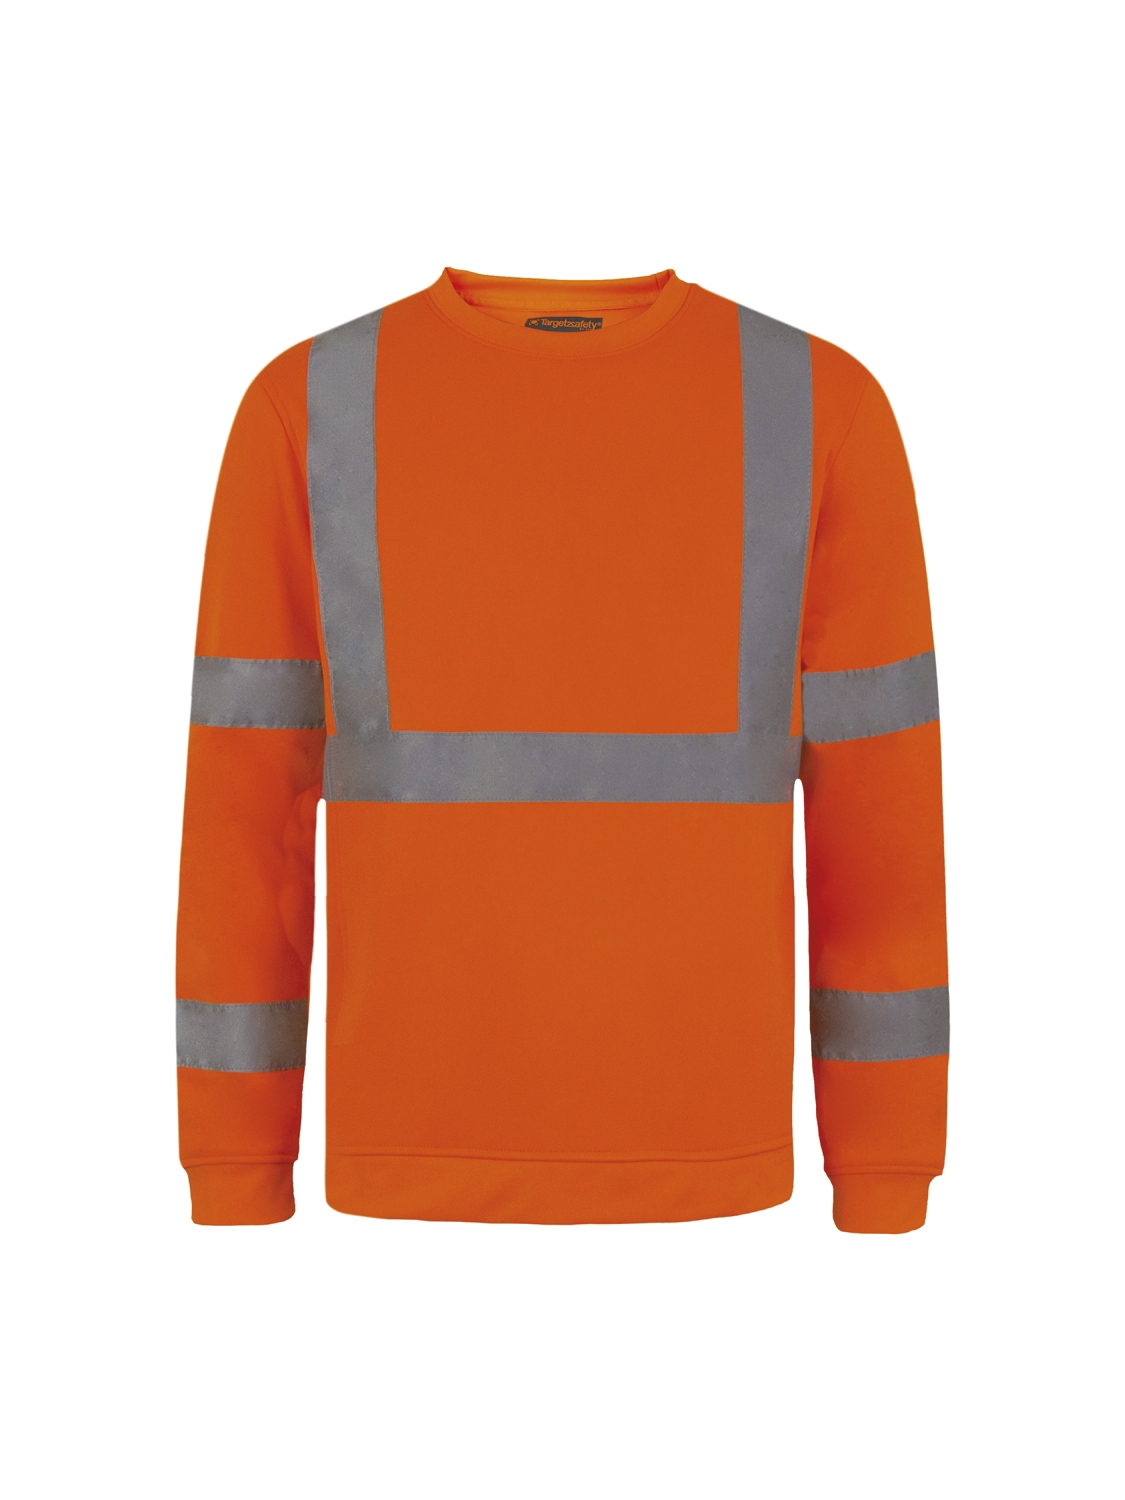 Sweat-shirt Freon HV - Orange Target 2 Safety